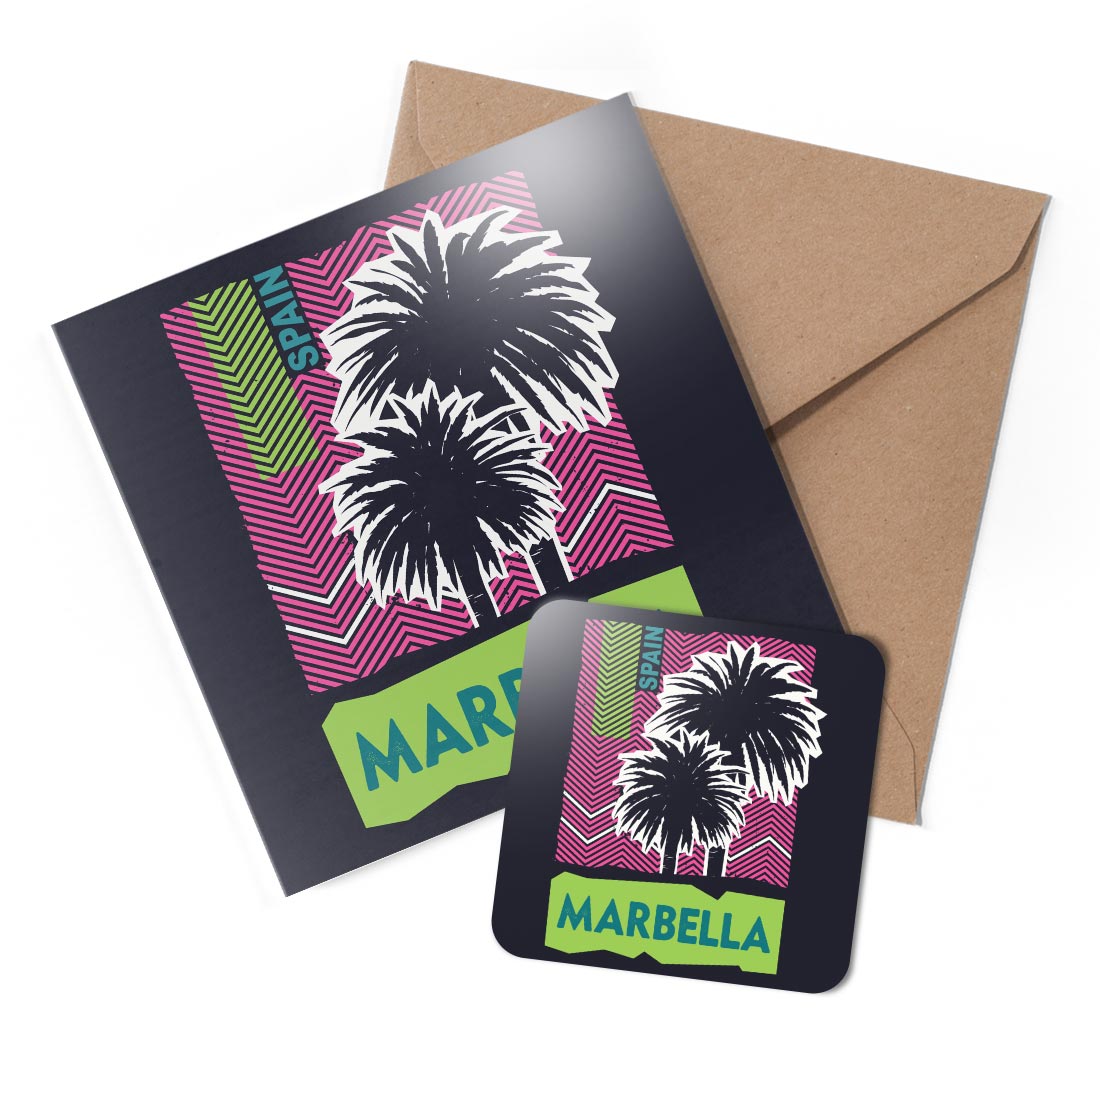 1 x Greeting Card & Coaster Set - Marbella Spain Palm Vacation #59400